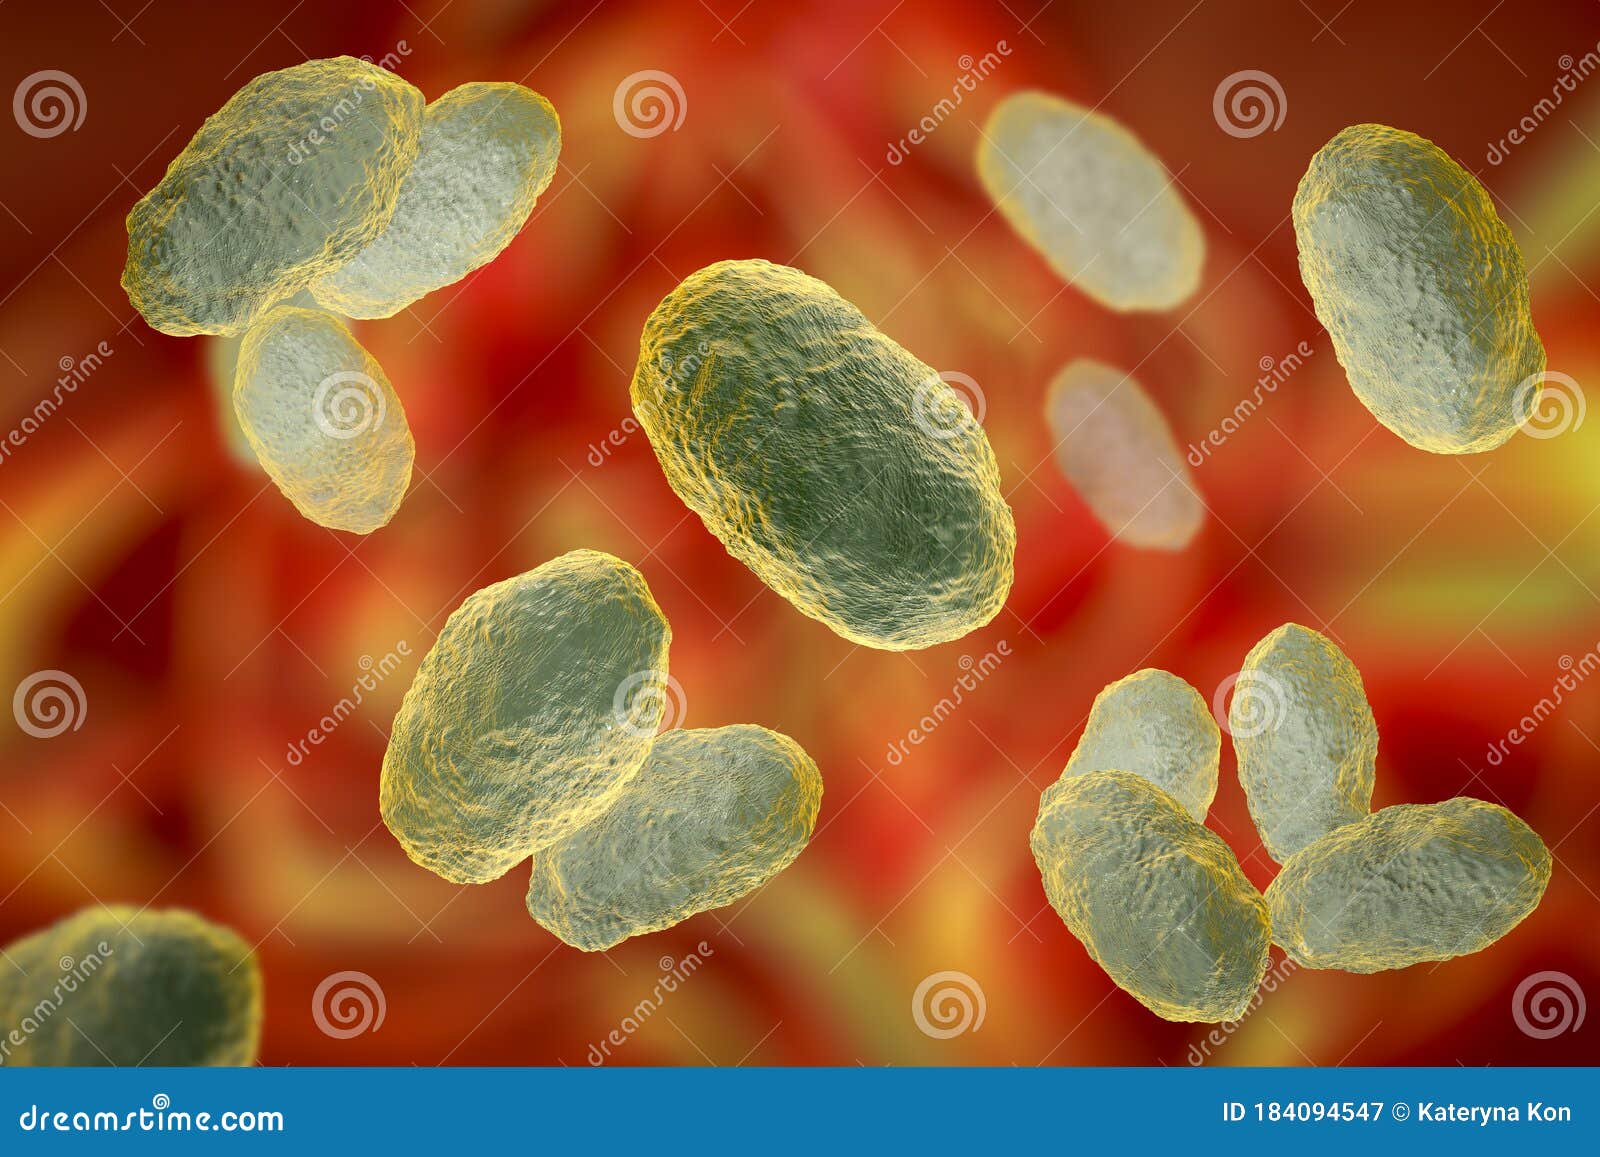 haemophilus influenzae bacteria